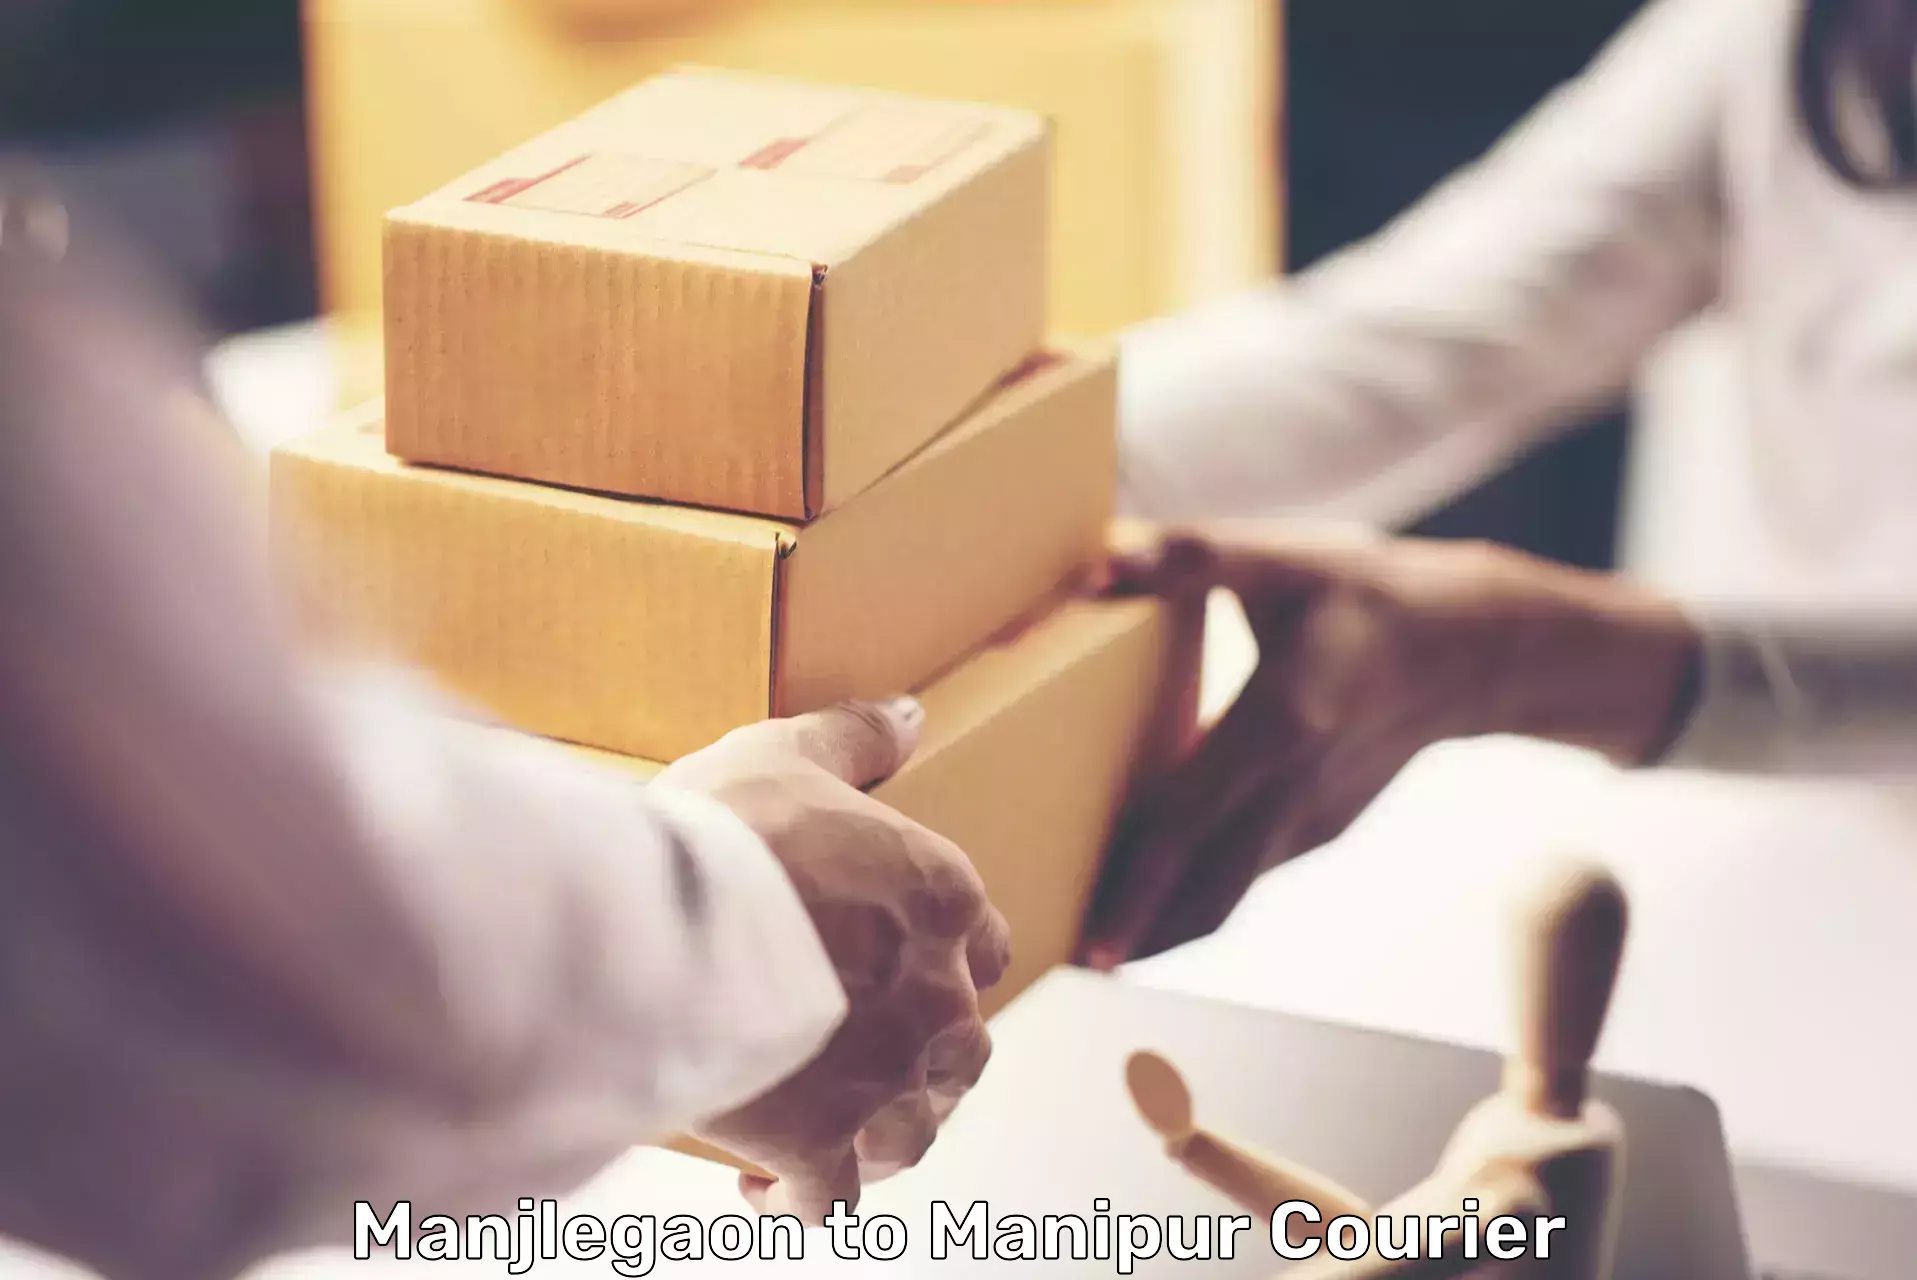 Large package courier Manjlegaon to Kanti